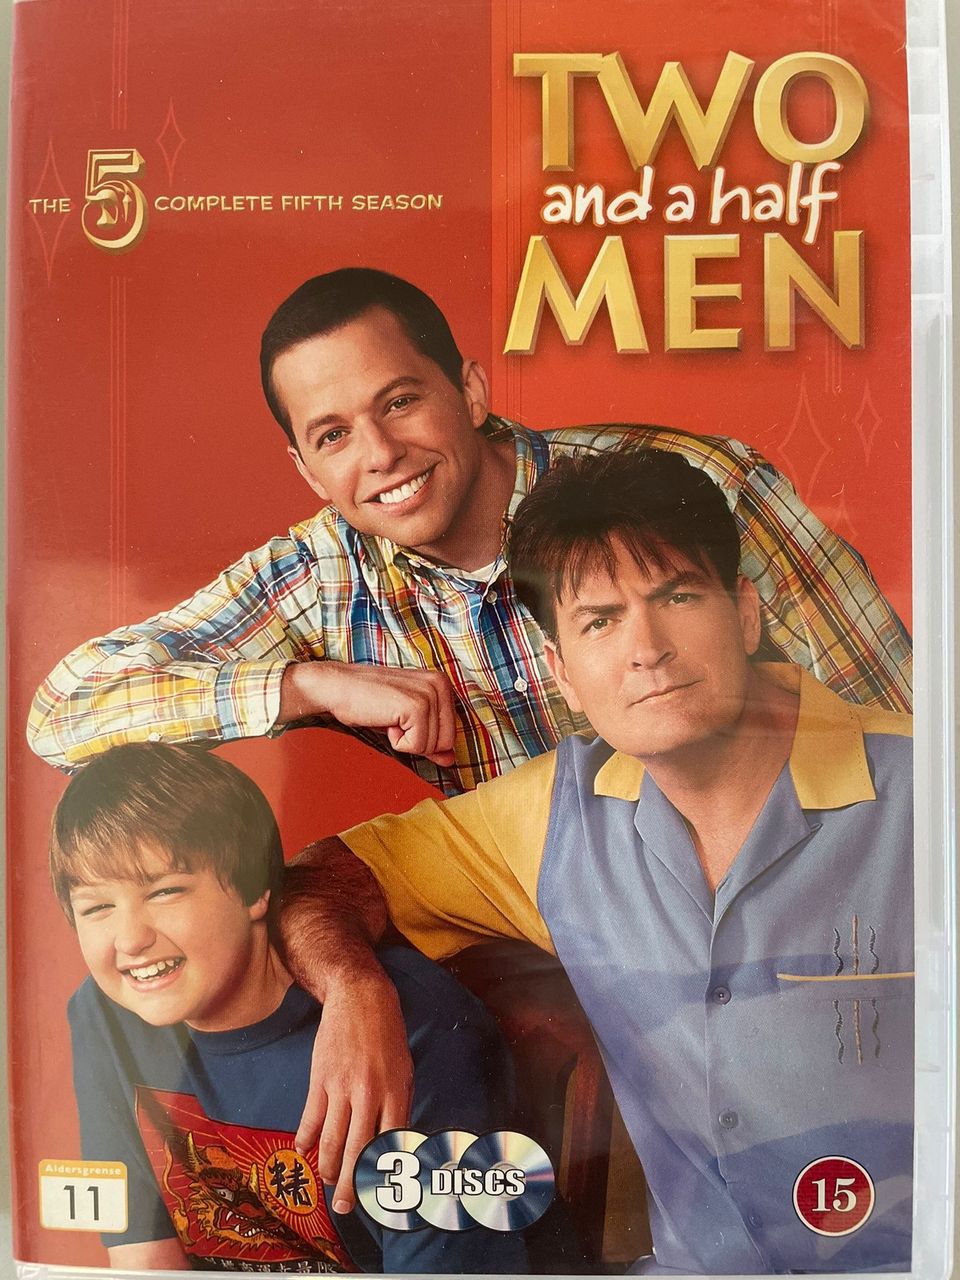 Two And A Half Men season 5 / Miehen puolikkaat kausi 5